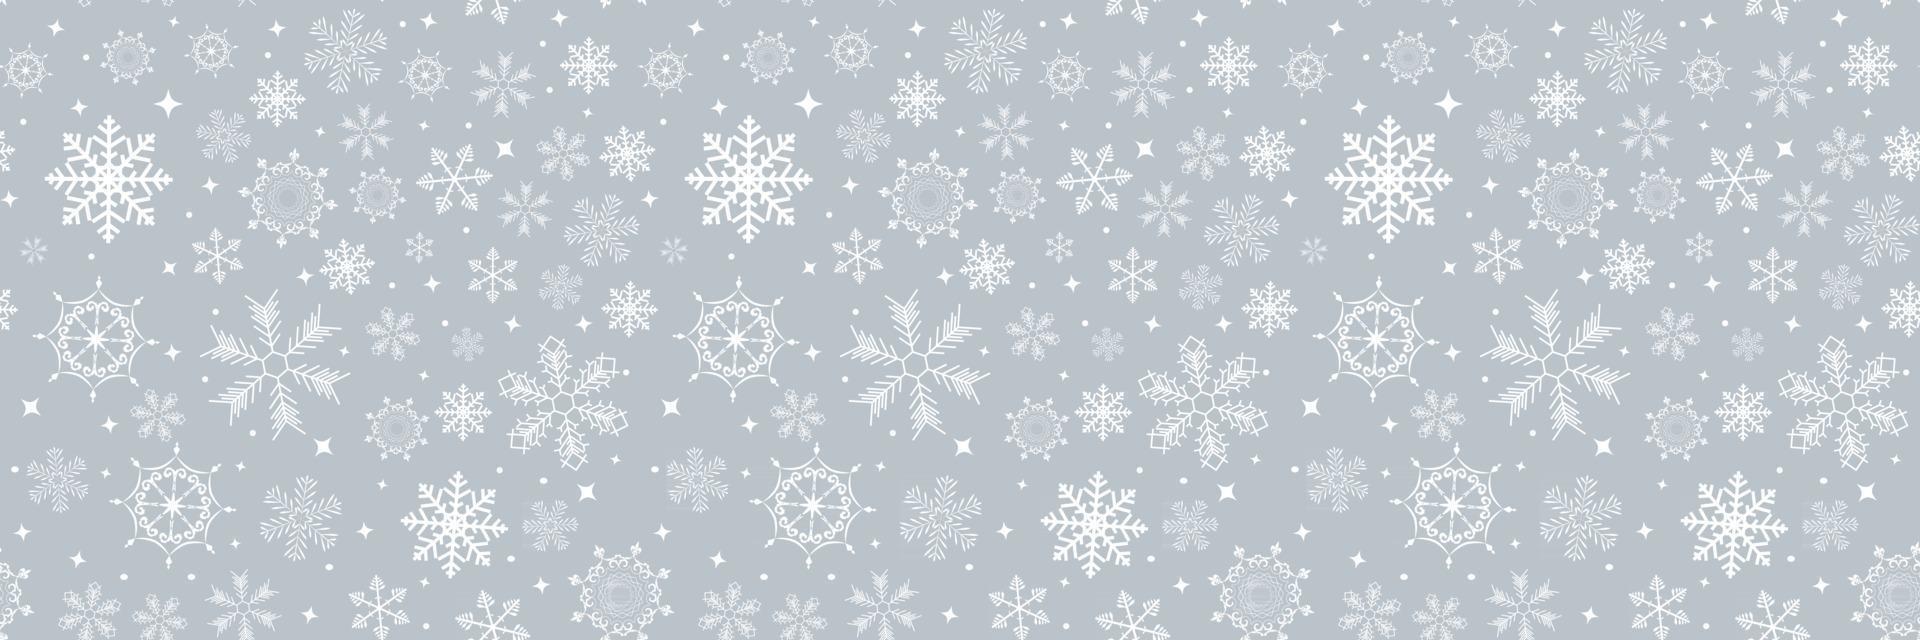 nahtloser Musterhintergrund des abstrakten Winterdesigns mit Schneeflocken für Weihnachten und Neujahrsplakat vektor